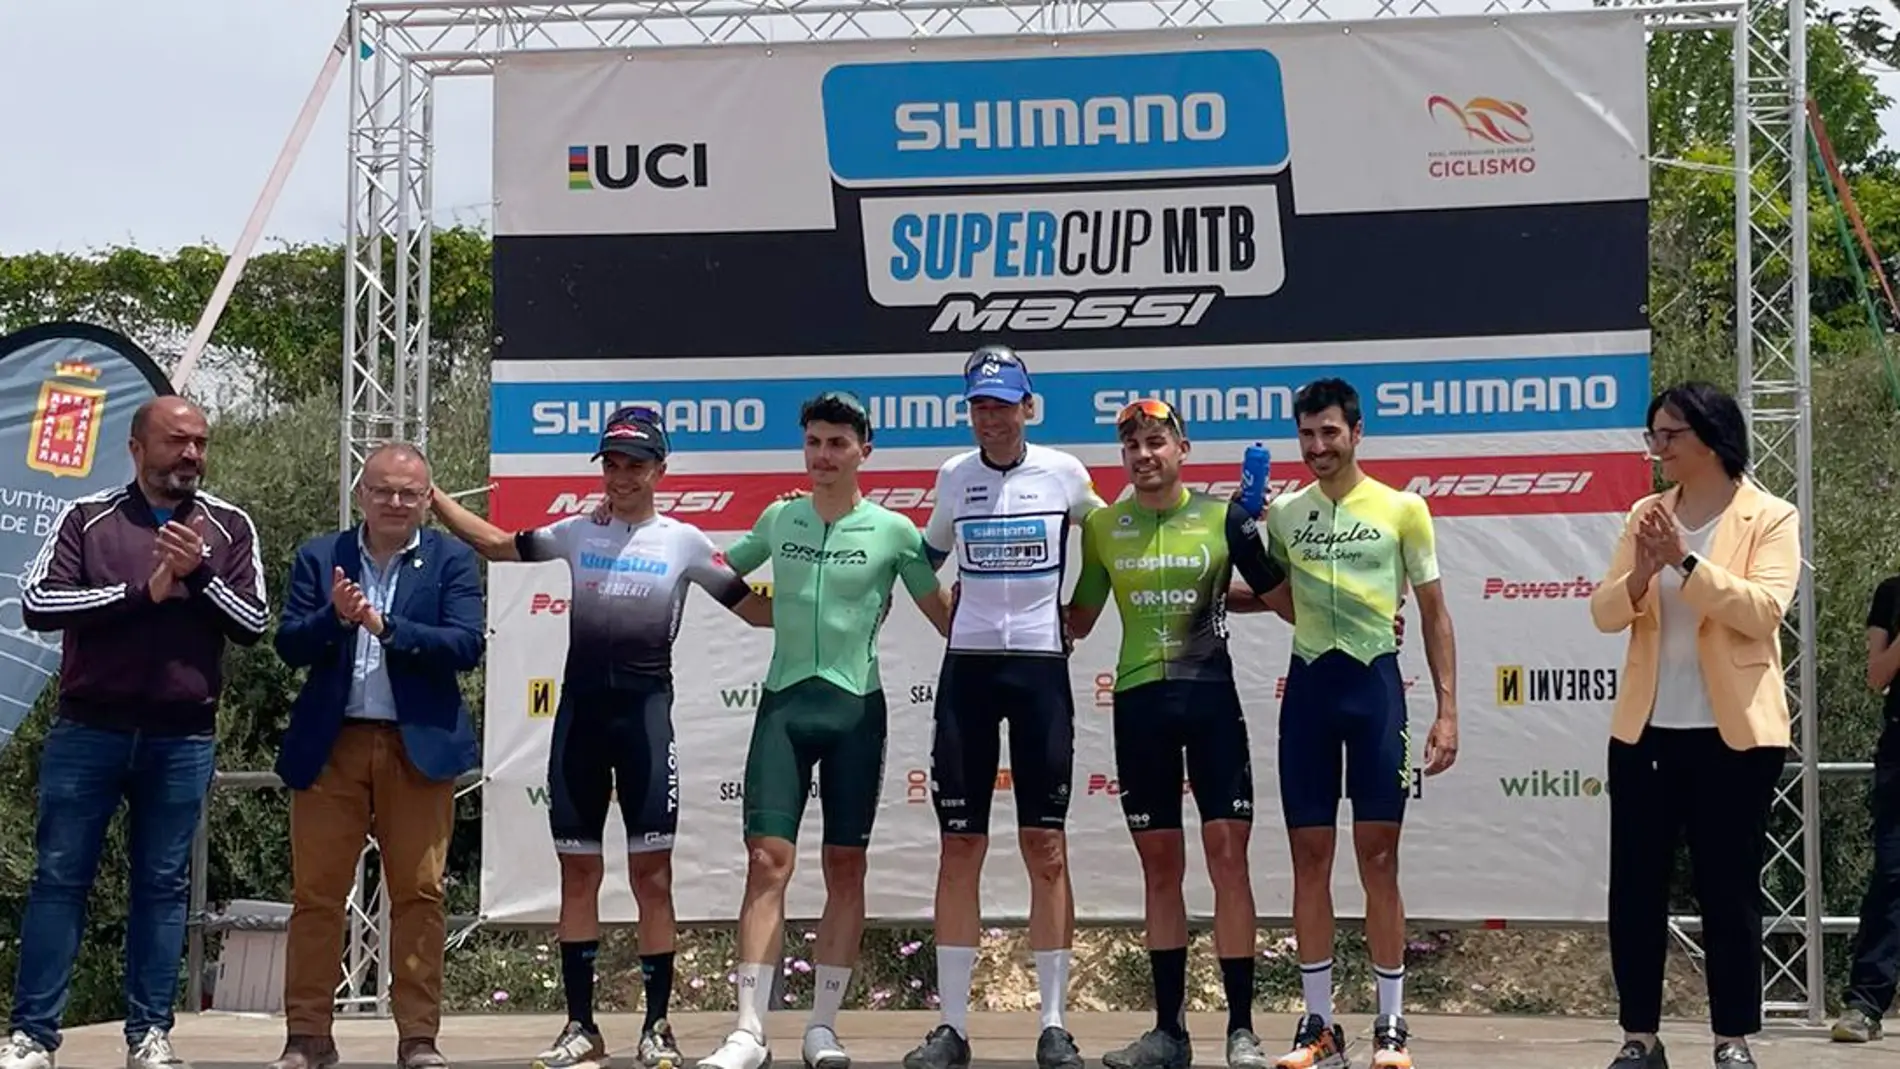 Triunfo en sub23 y podio absoluto para Juan Luis Pérez en la prueba UCI C1, “Shimano Supercup Massi Baza”